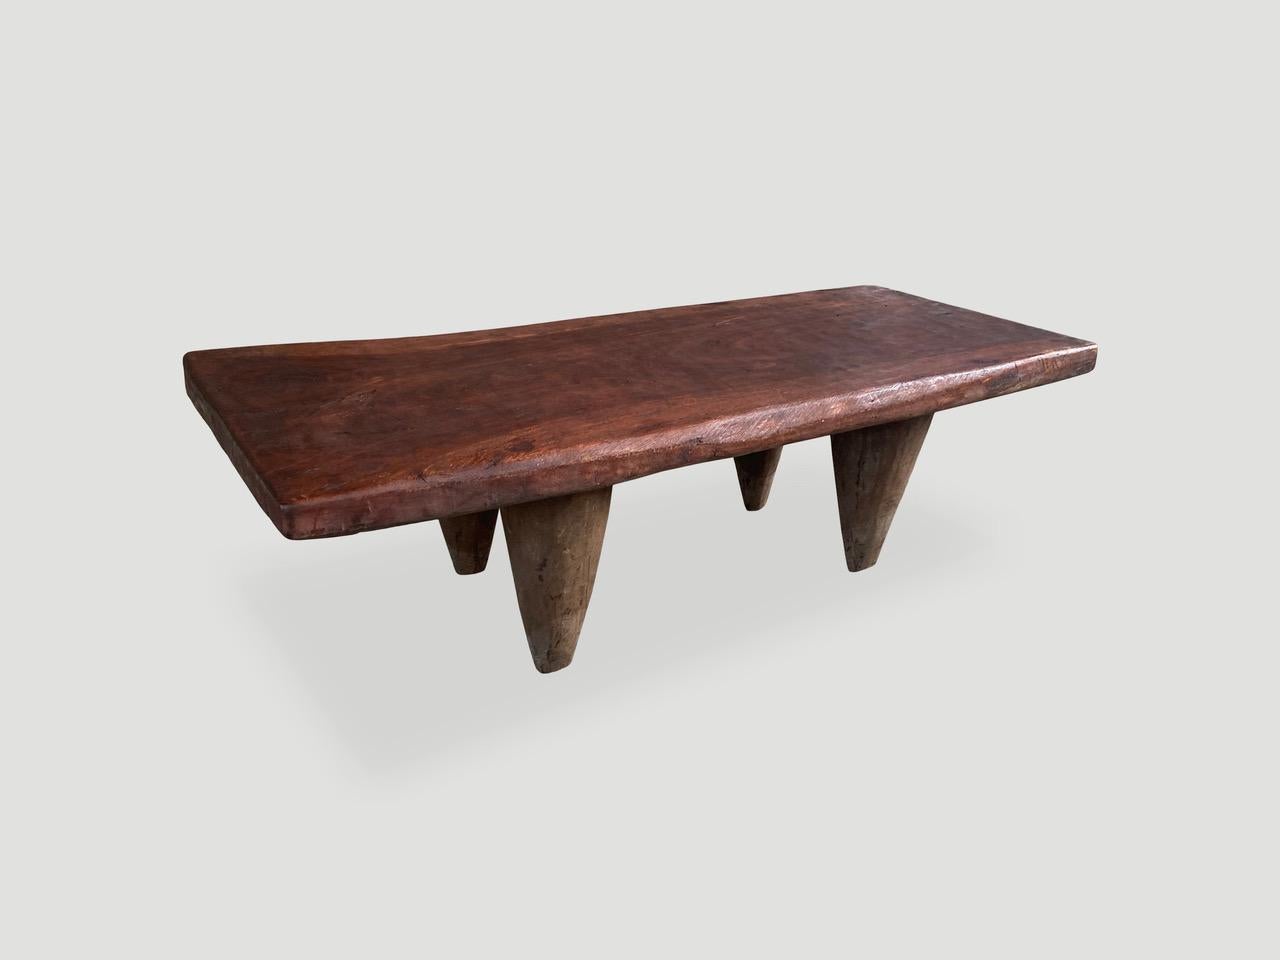 Table basse ou banc antique sculpté à la main par les tribus Senufo à partir d'un seul bloc de bois iroko, originaire de la côte ouest de l'Afrique. Le bois est dur, dense et très durable. Montré avec des pieds de style conique et avec un dessus de